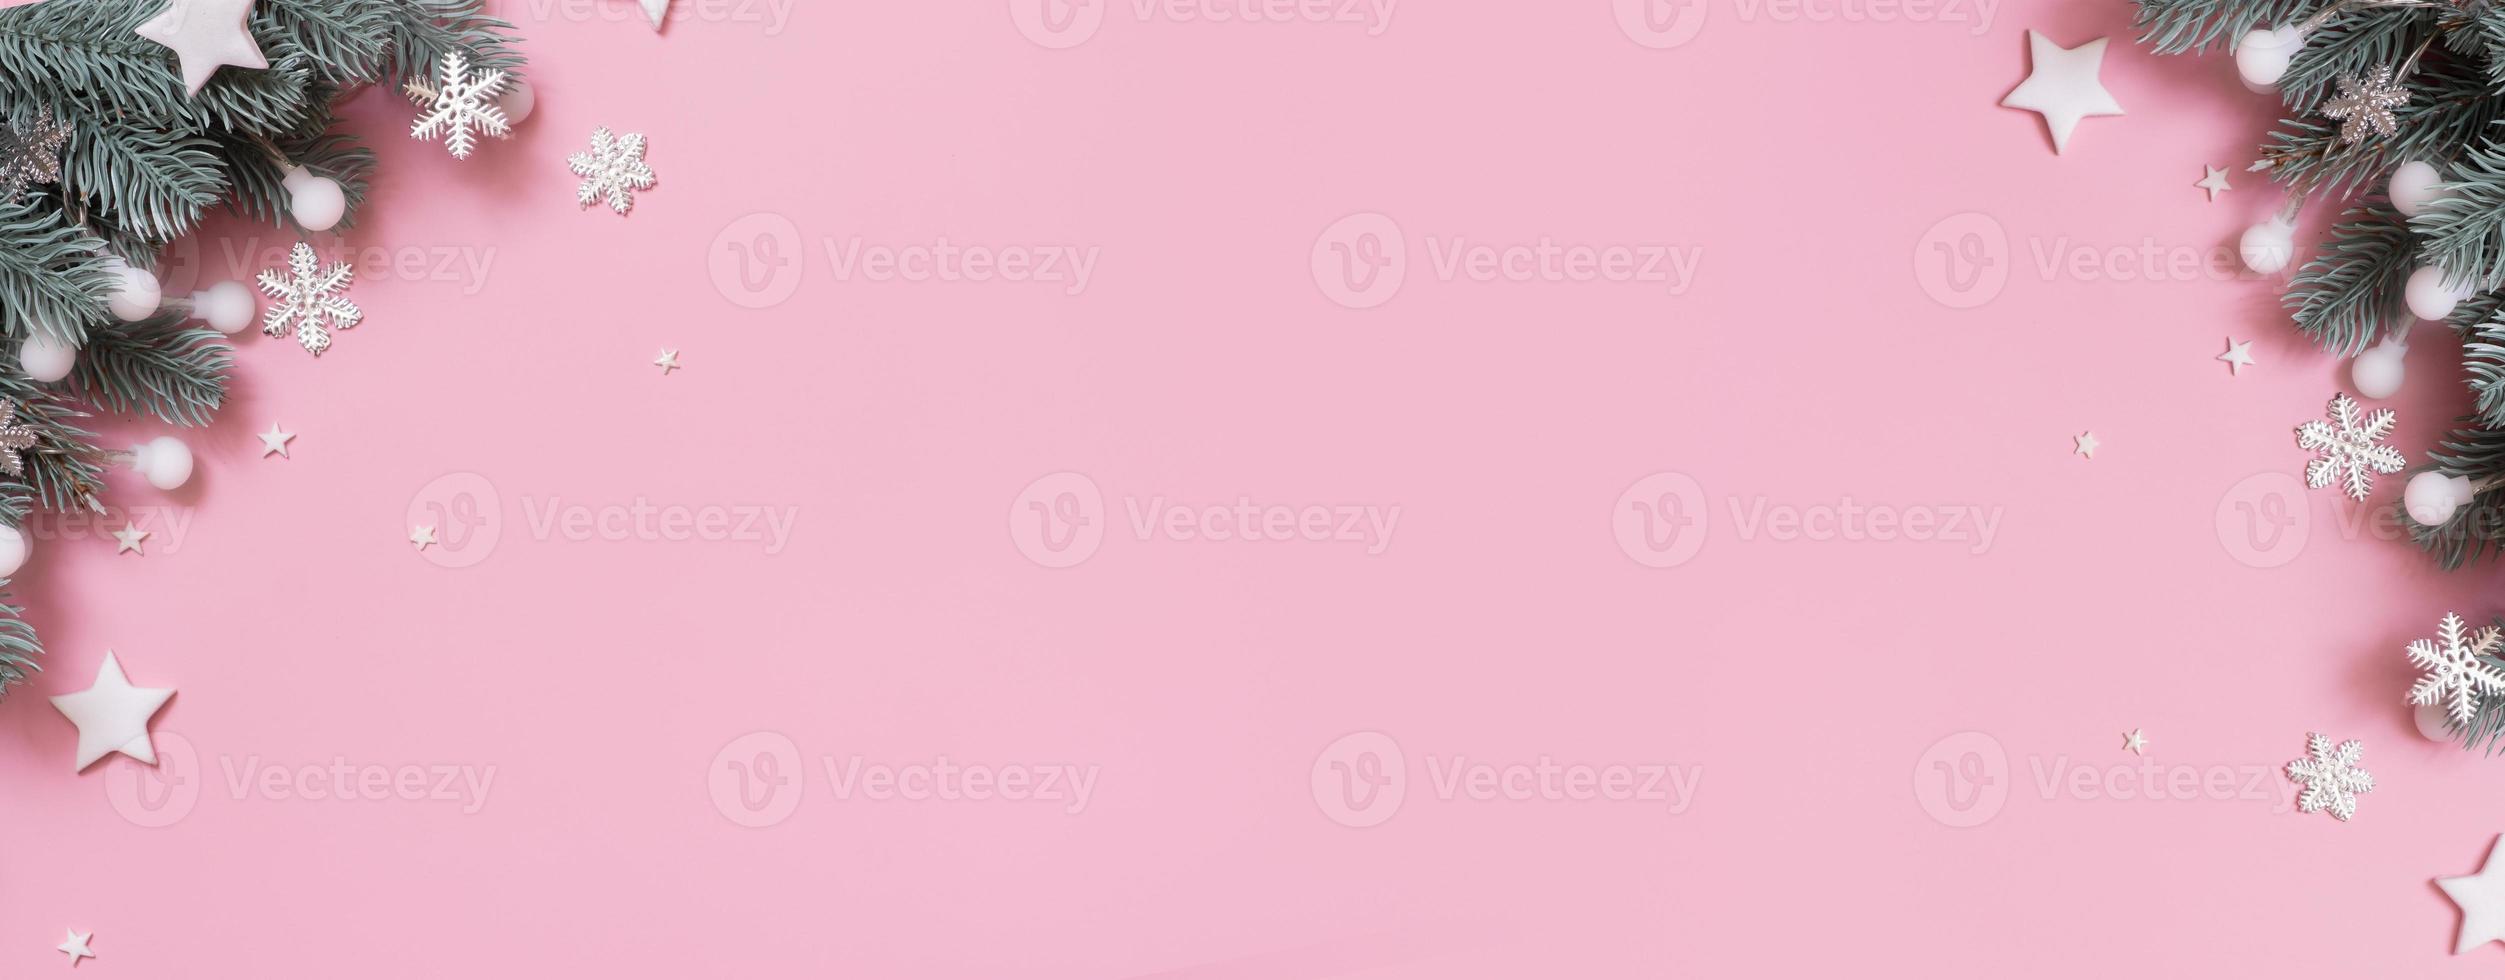 banner con decoración navideña de año nuevo vista superior, plano sobre fondo rosa con espacio de copia foto